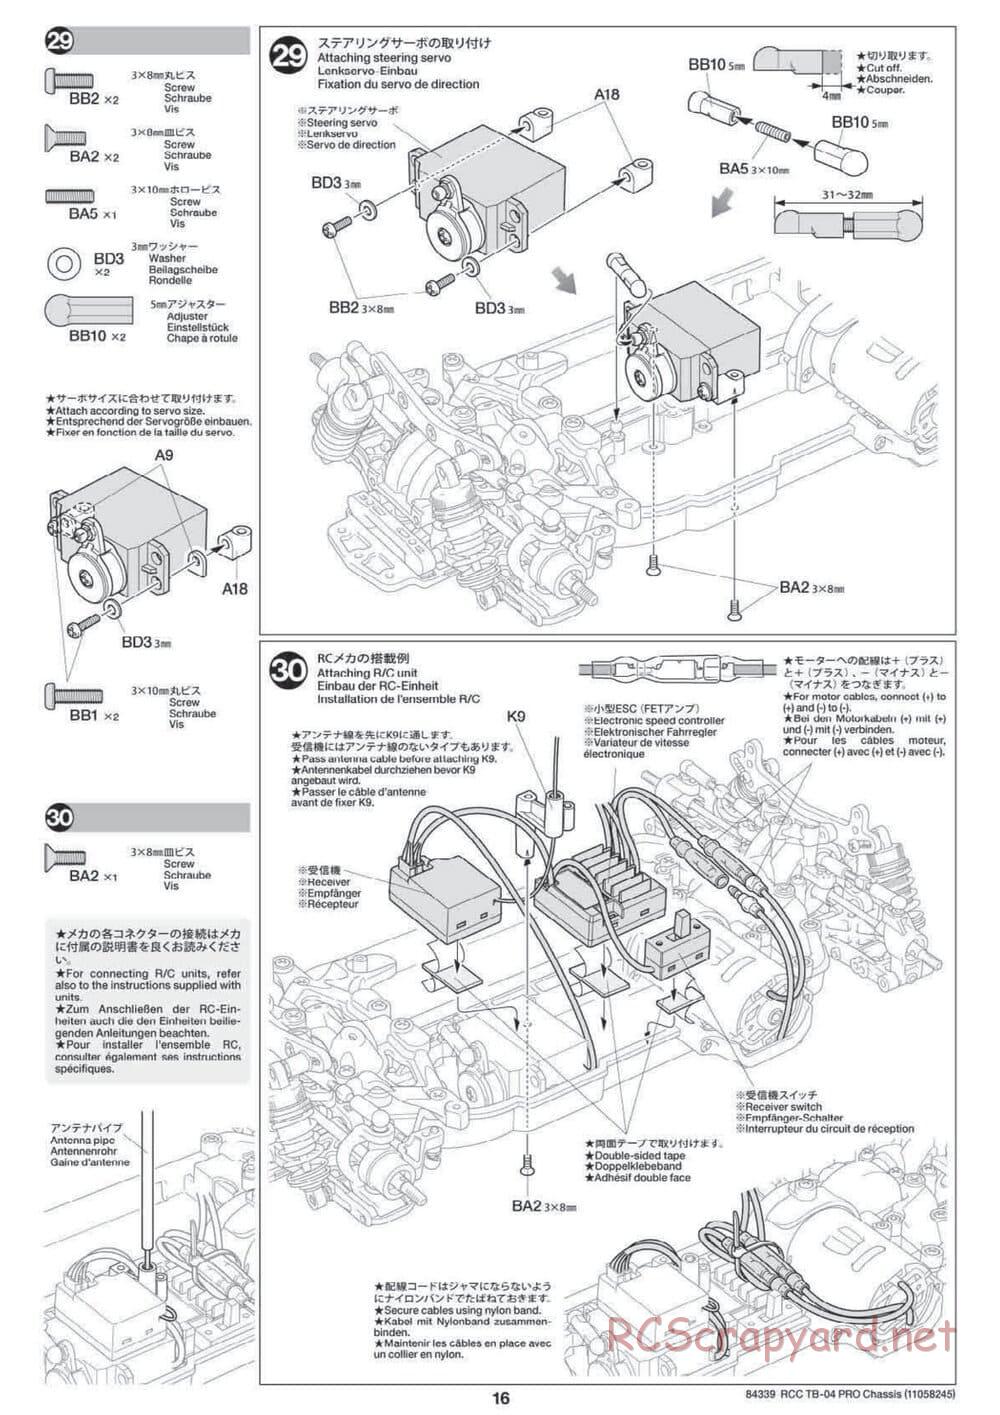 Tamiya - TB-04 Pro Chassis - Manual - Page 16